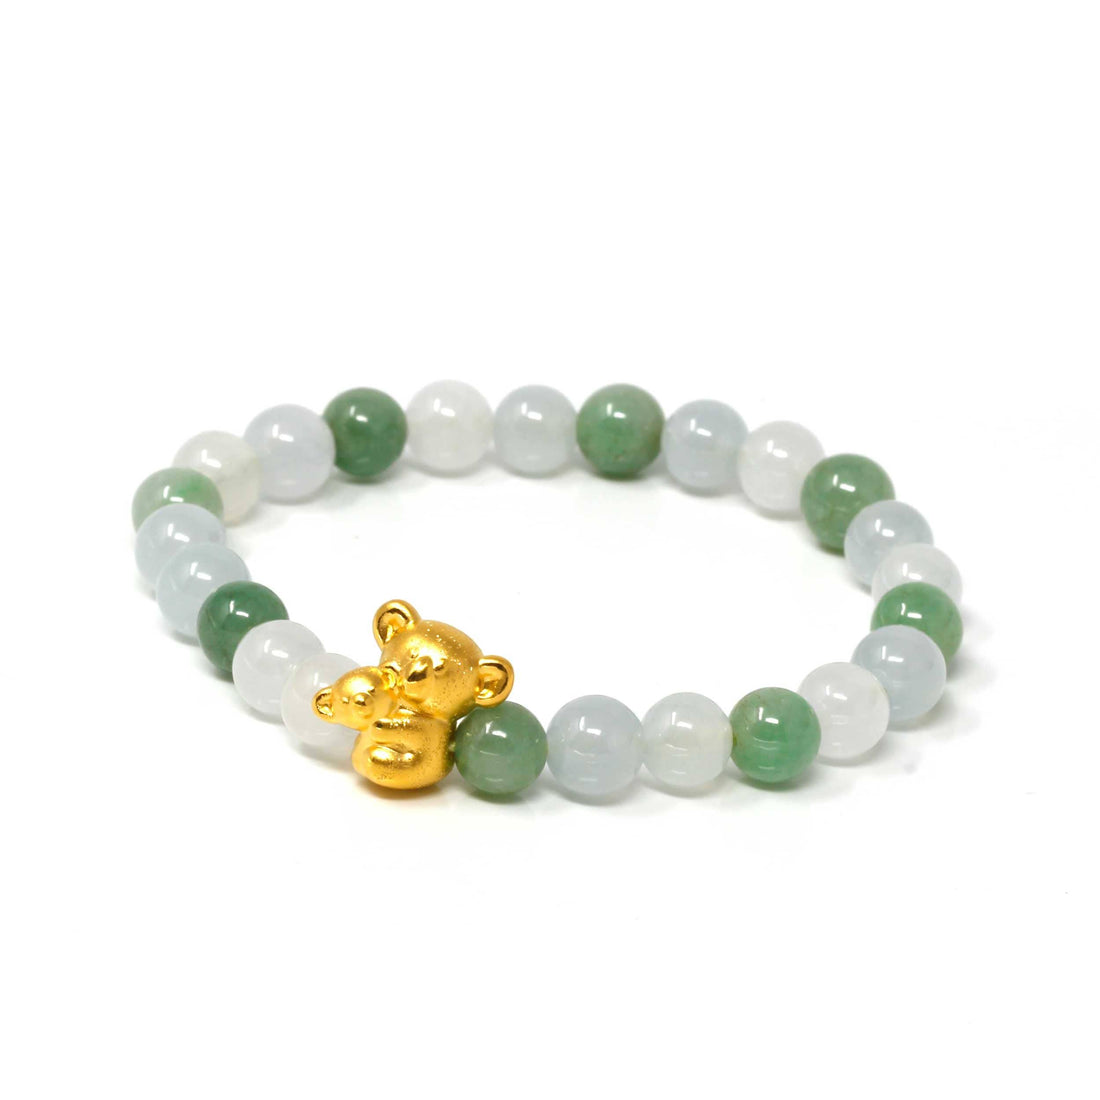 Baikalla Jewelry 24k Gold Jadeite Beads Bracelet Genuine High-quality Jade Jadeite Bracelet Bangle with 24k Yellow Gold Koala Bear Charm #402